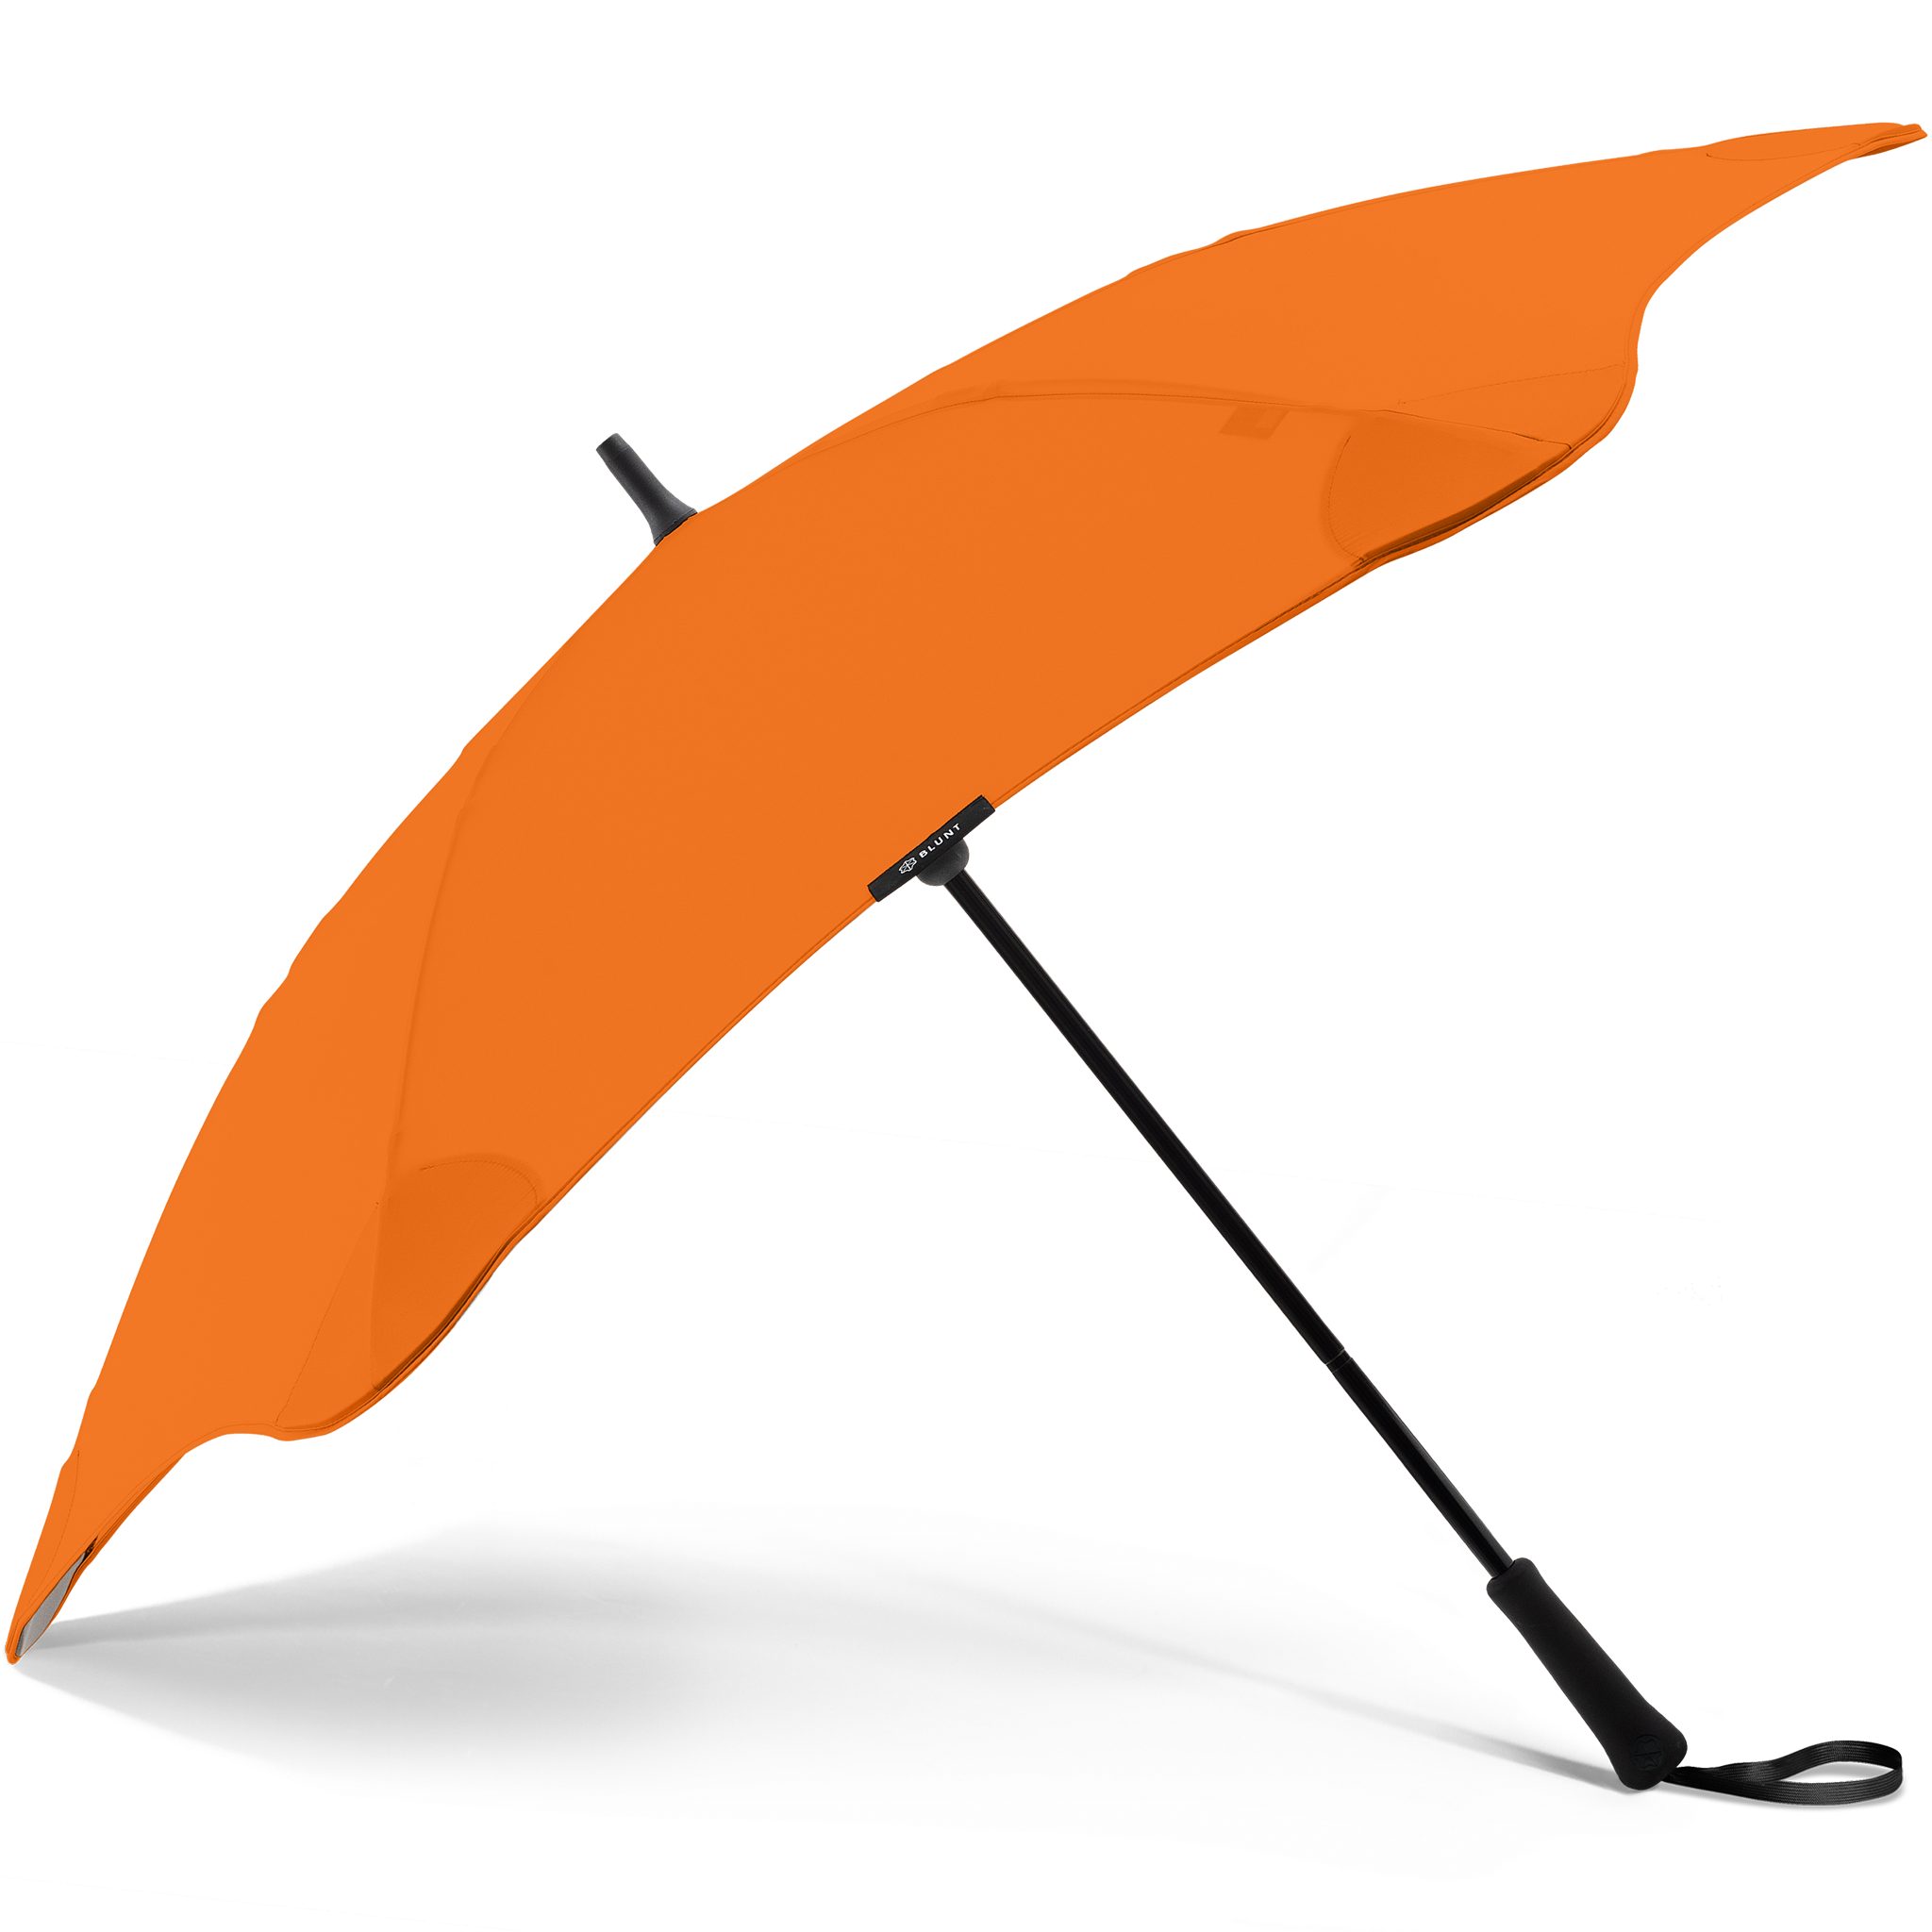 Blunt Stockregenschirm Classic, herausragende patentierte Technologie, einzigartige Silhouette orange